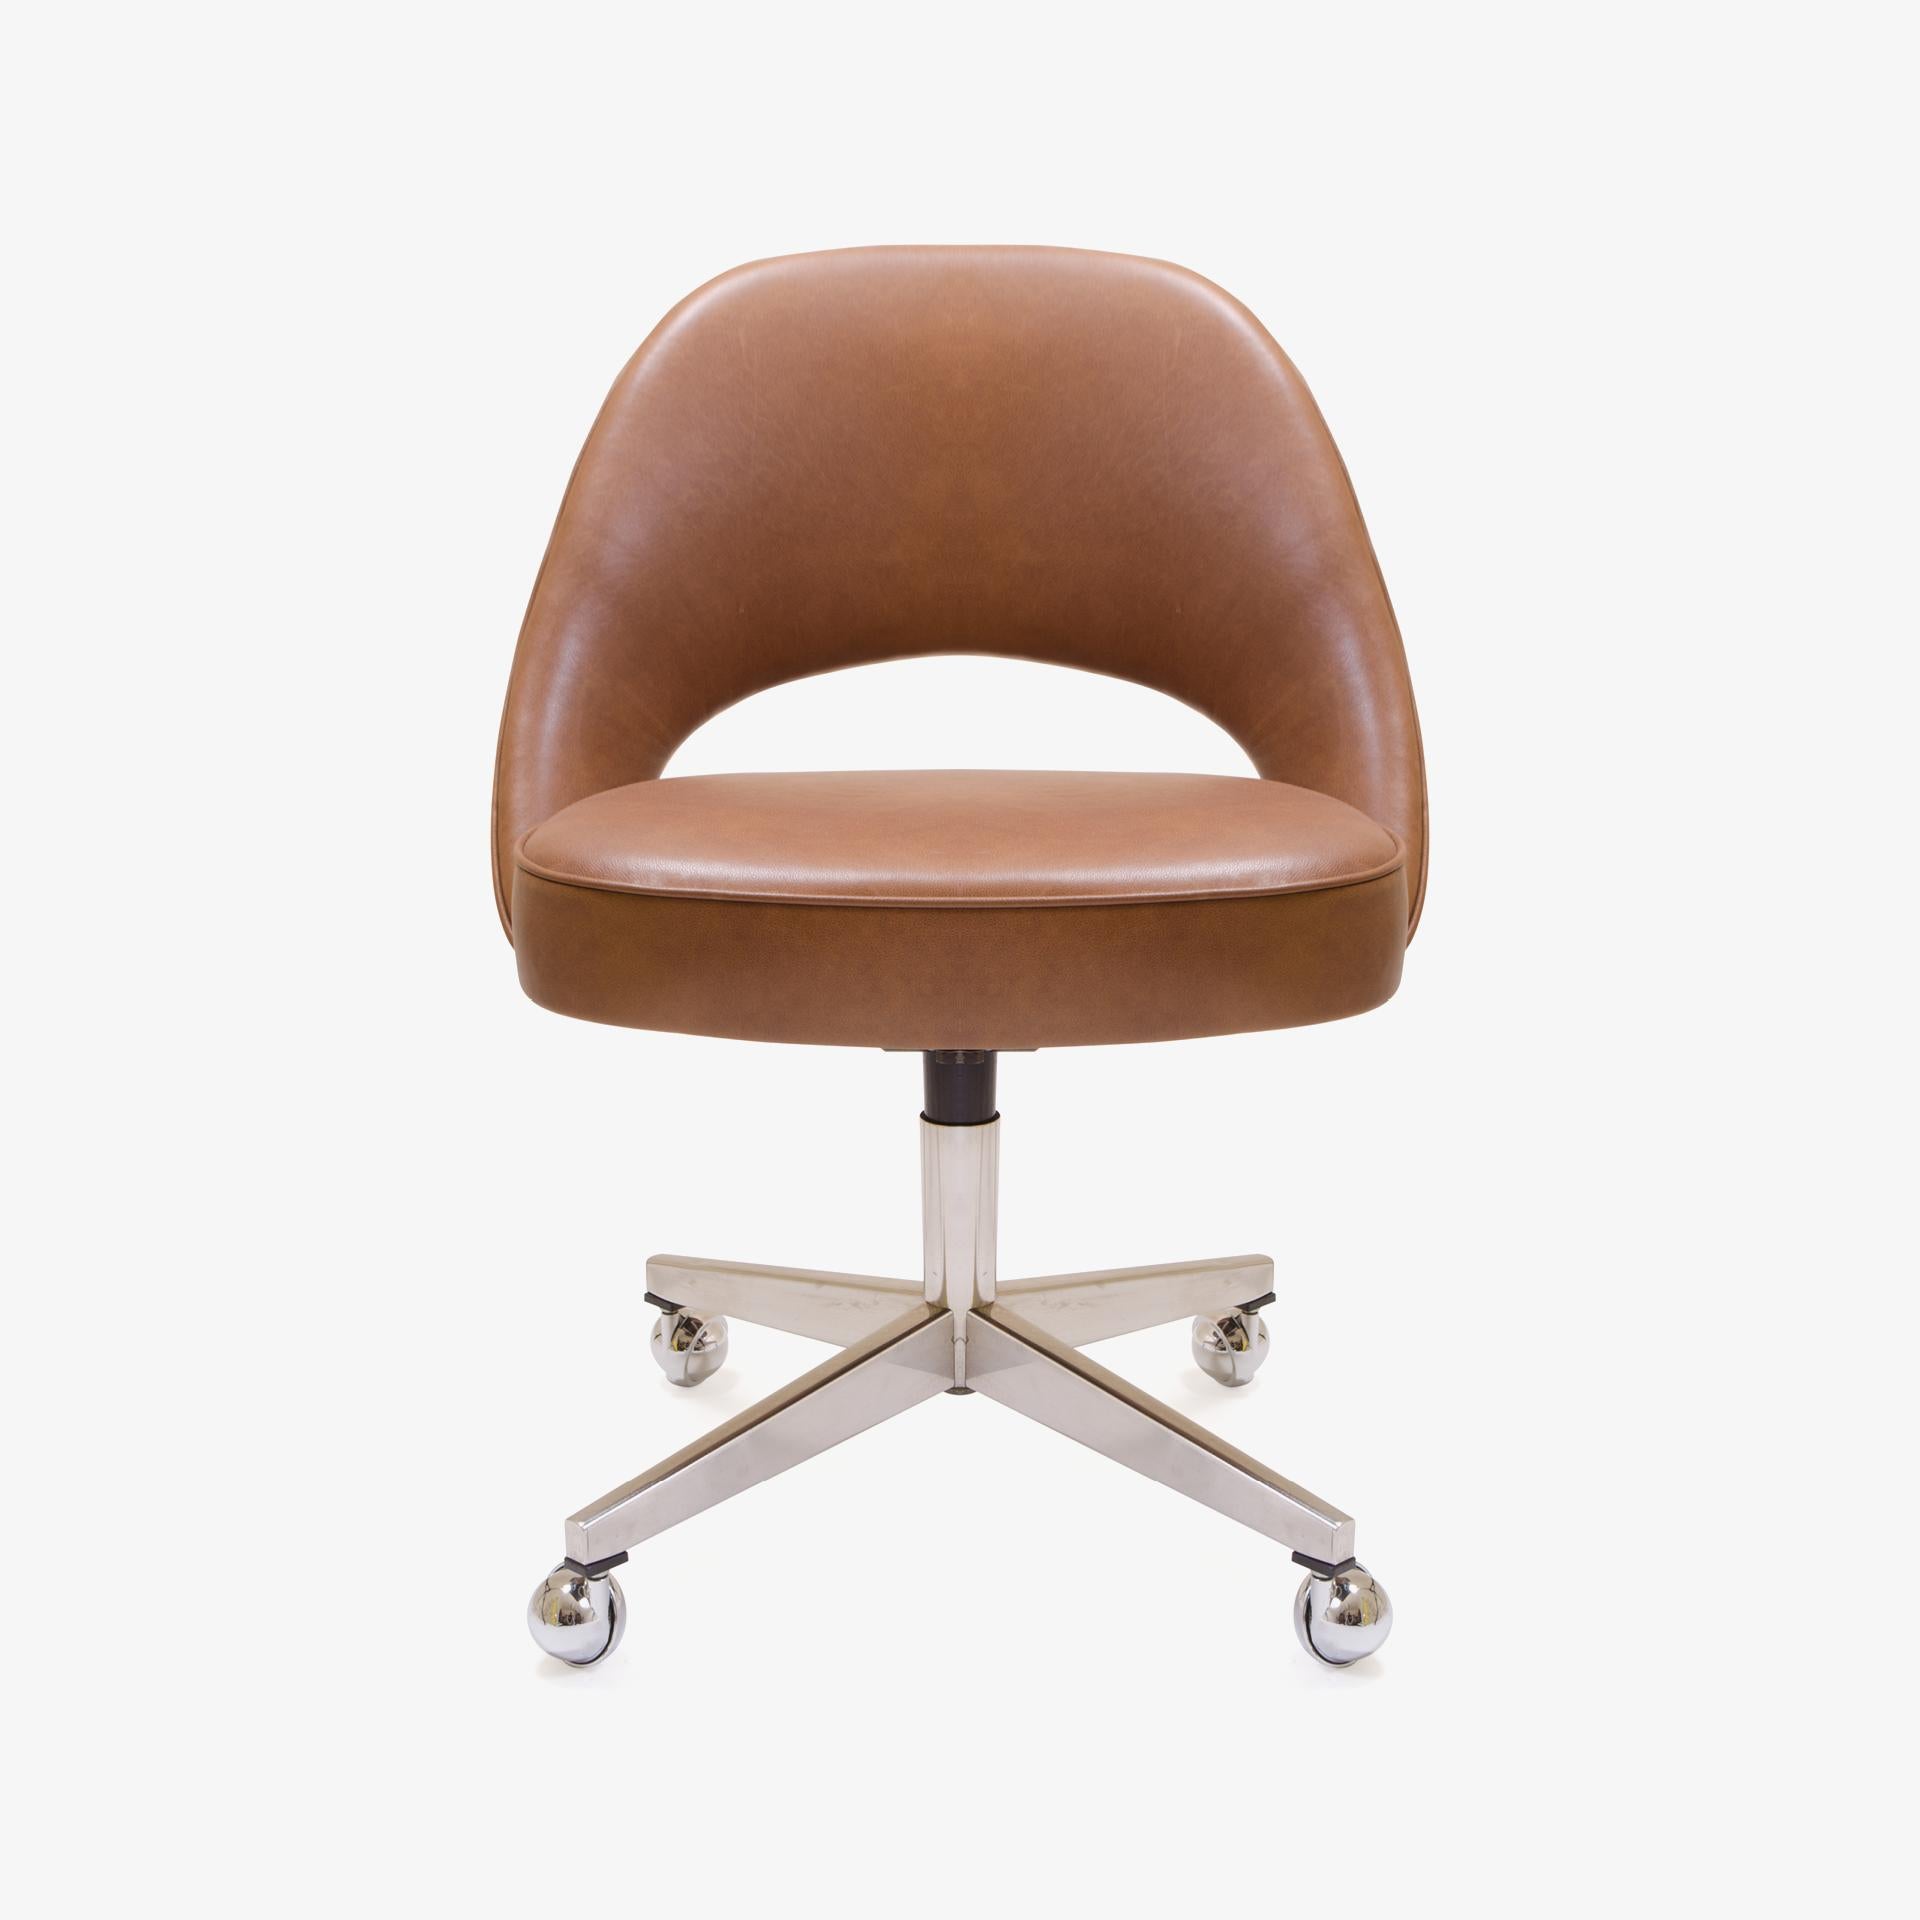 Depuis des années, Montage restaure des fauteuils de direction Saarinen dans tous les tissus possibles et imaginables, dans son propre atelier. Nous avons restauré ces chaises en utilisant un cuir italien souple de couleur selle, en utilisant le